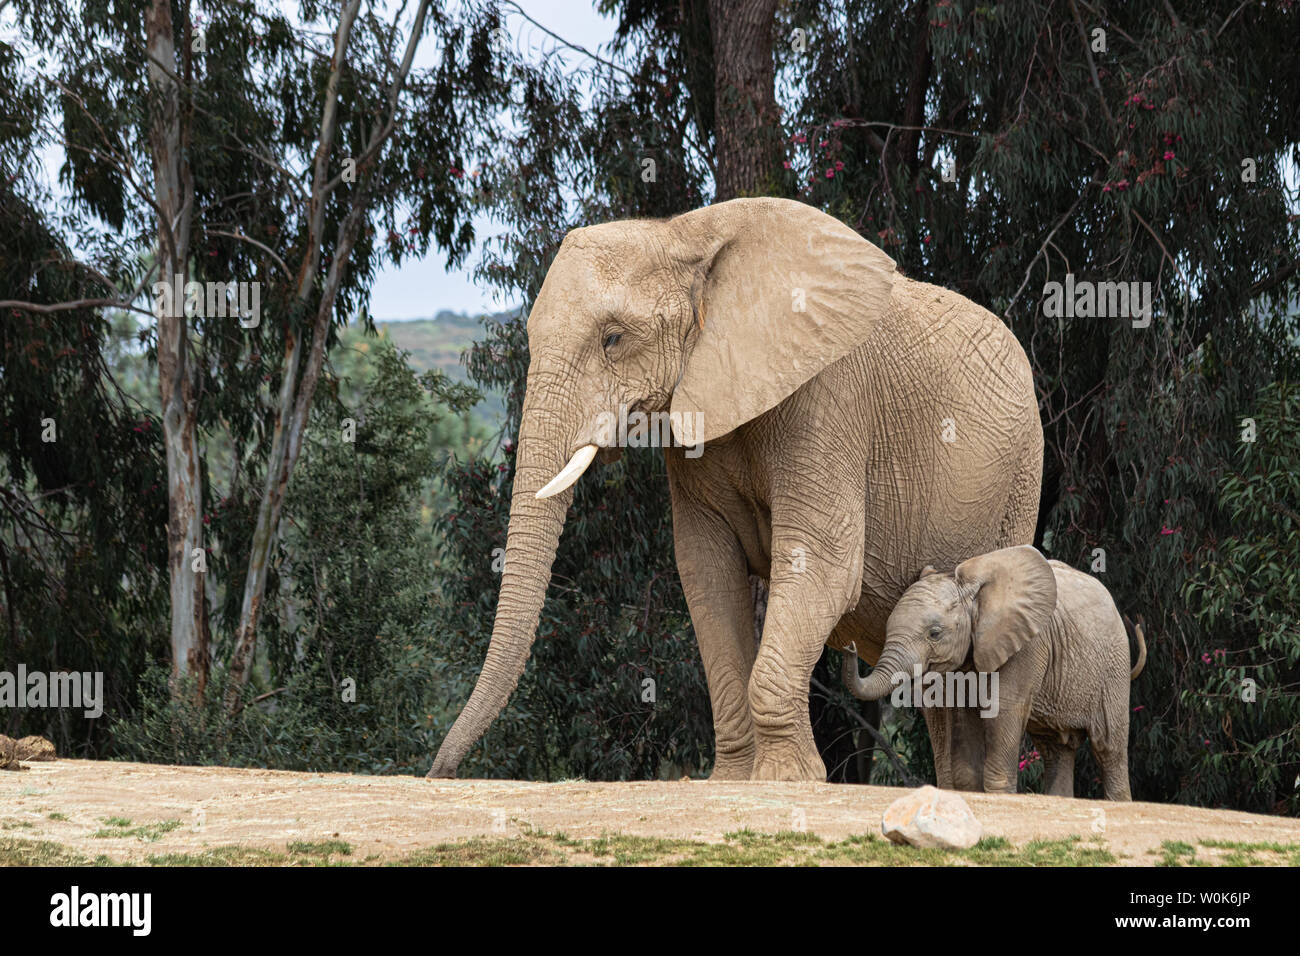 Afrikanische Elefanten, Art liebevolle zärtliche Beziehung, Mutter und Kind, süße kleine Baby Elefant nach Mutter Natur Landschaft Stockfoto